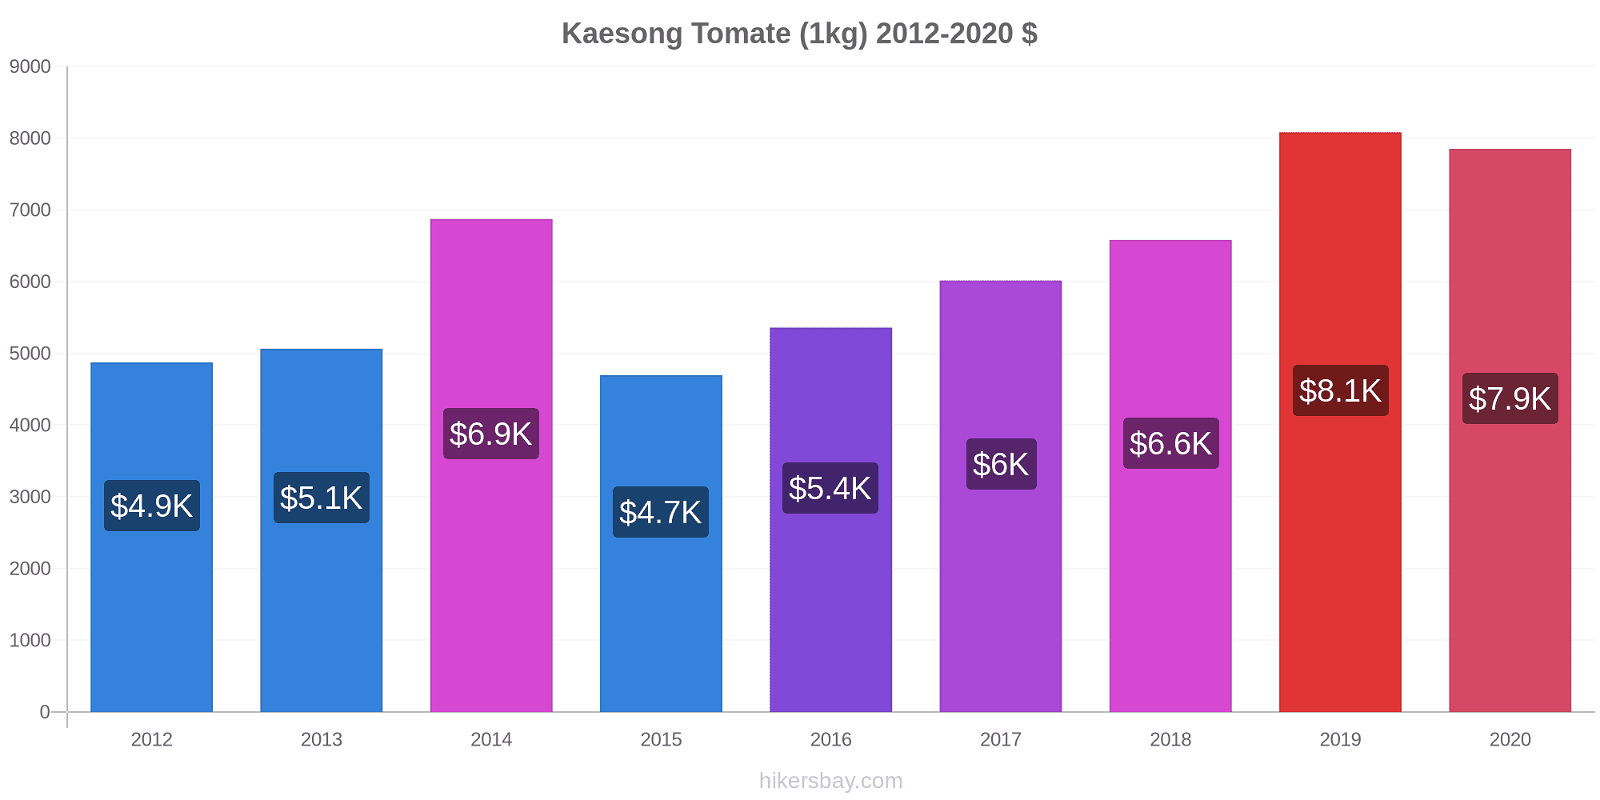 Kaesong cambios de precios Tomate (1kg) hikersbay.com